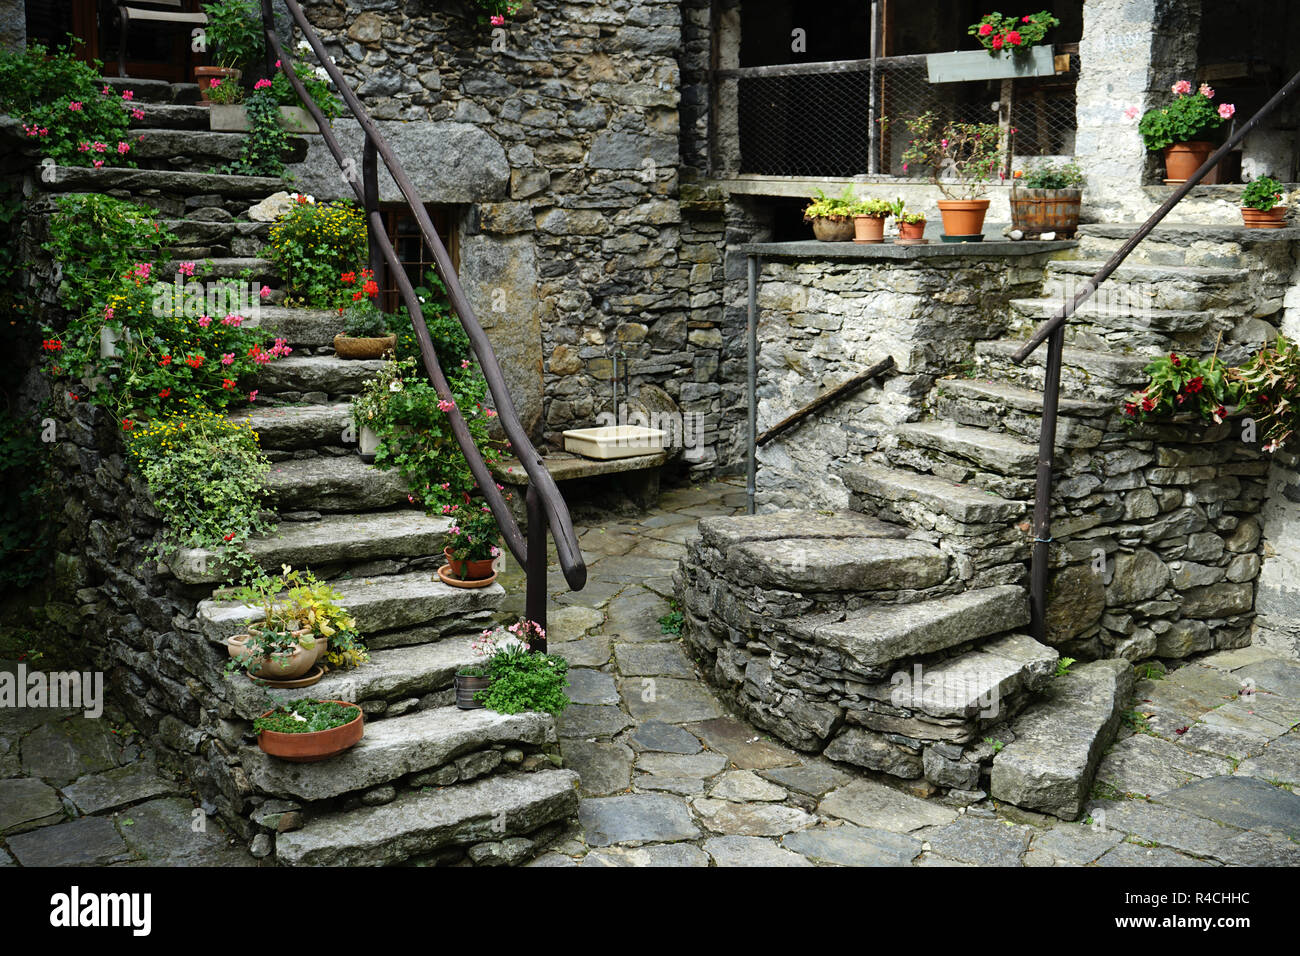 Rock escaleras en townsquare en pueblo viejo Sonlerto, Val Bavona, Tcicino, Suiza Foto de stock